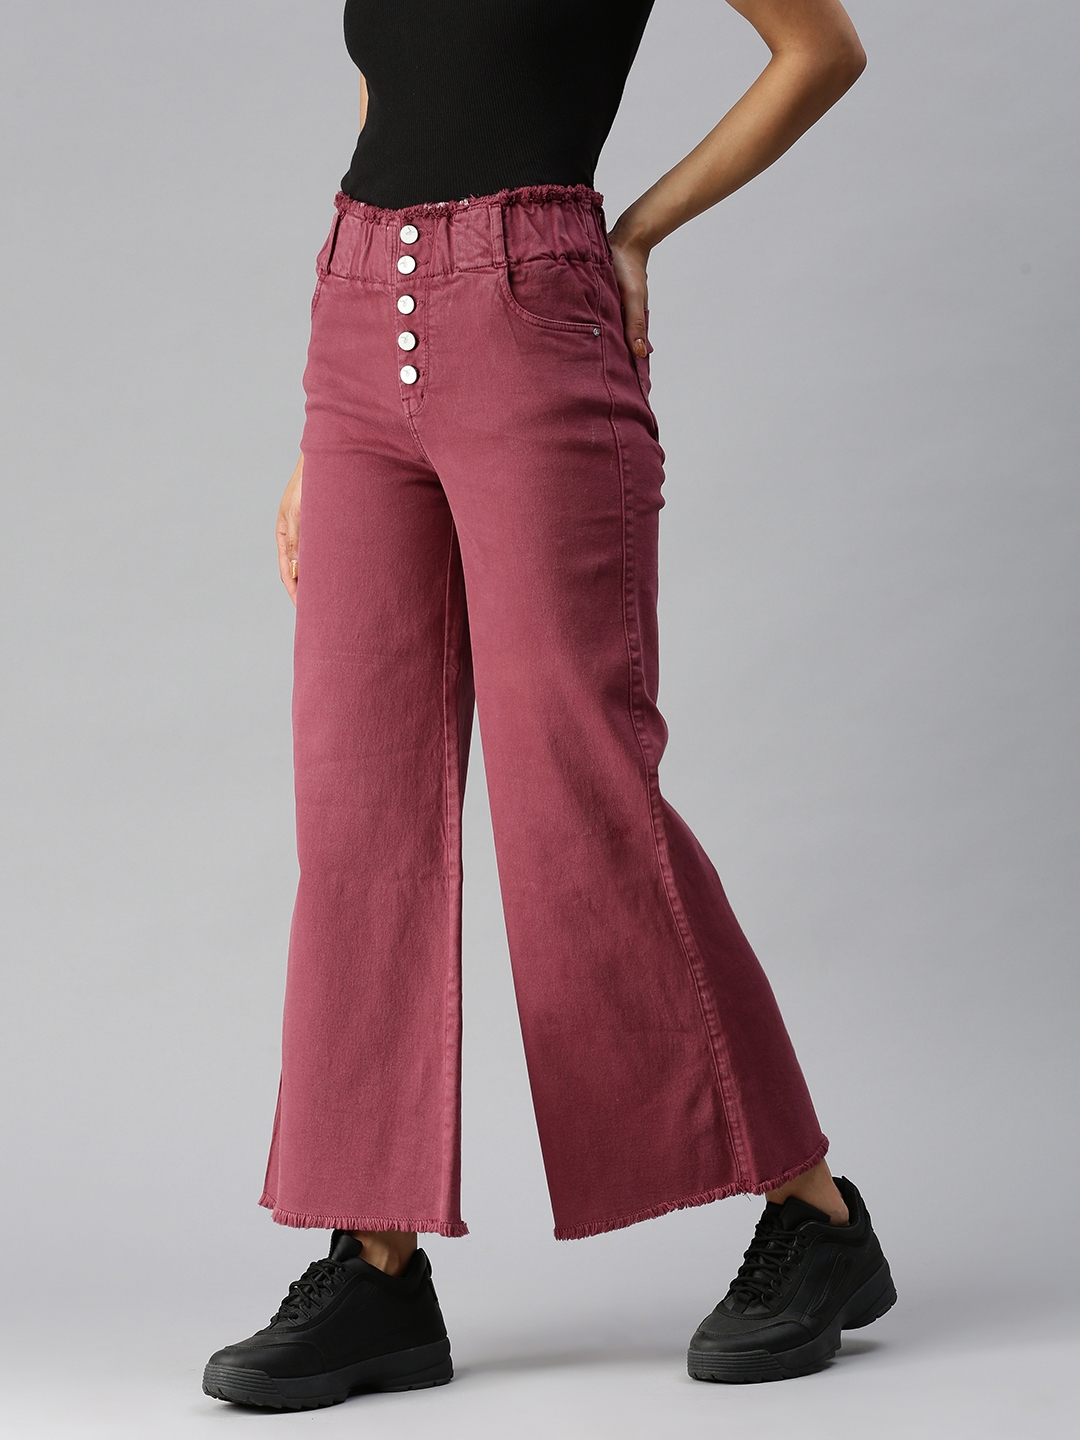 Women's Purple Denim Solid Jeans